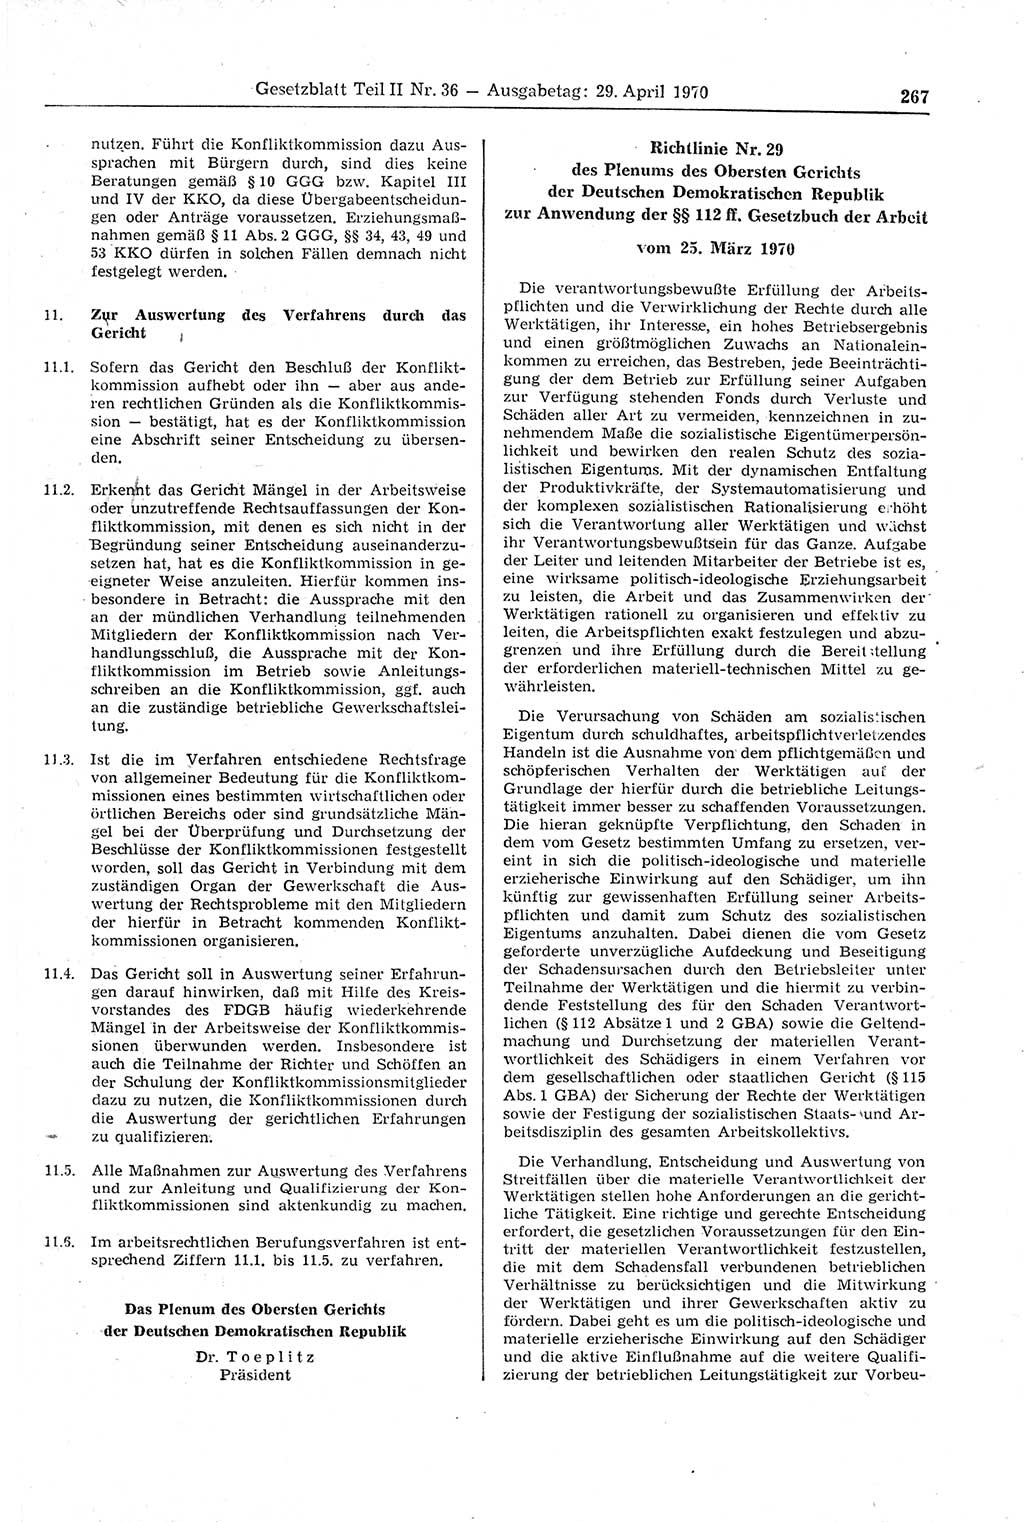 Gesetzblatt (GBl.) der Deutschen Demokratischen Republik (DDR) Teil ⅠⅠ 1970, Seite 267 (GBl. DDR ⅠⅠ 1970, S. 267)